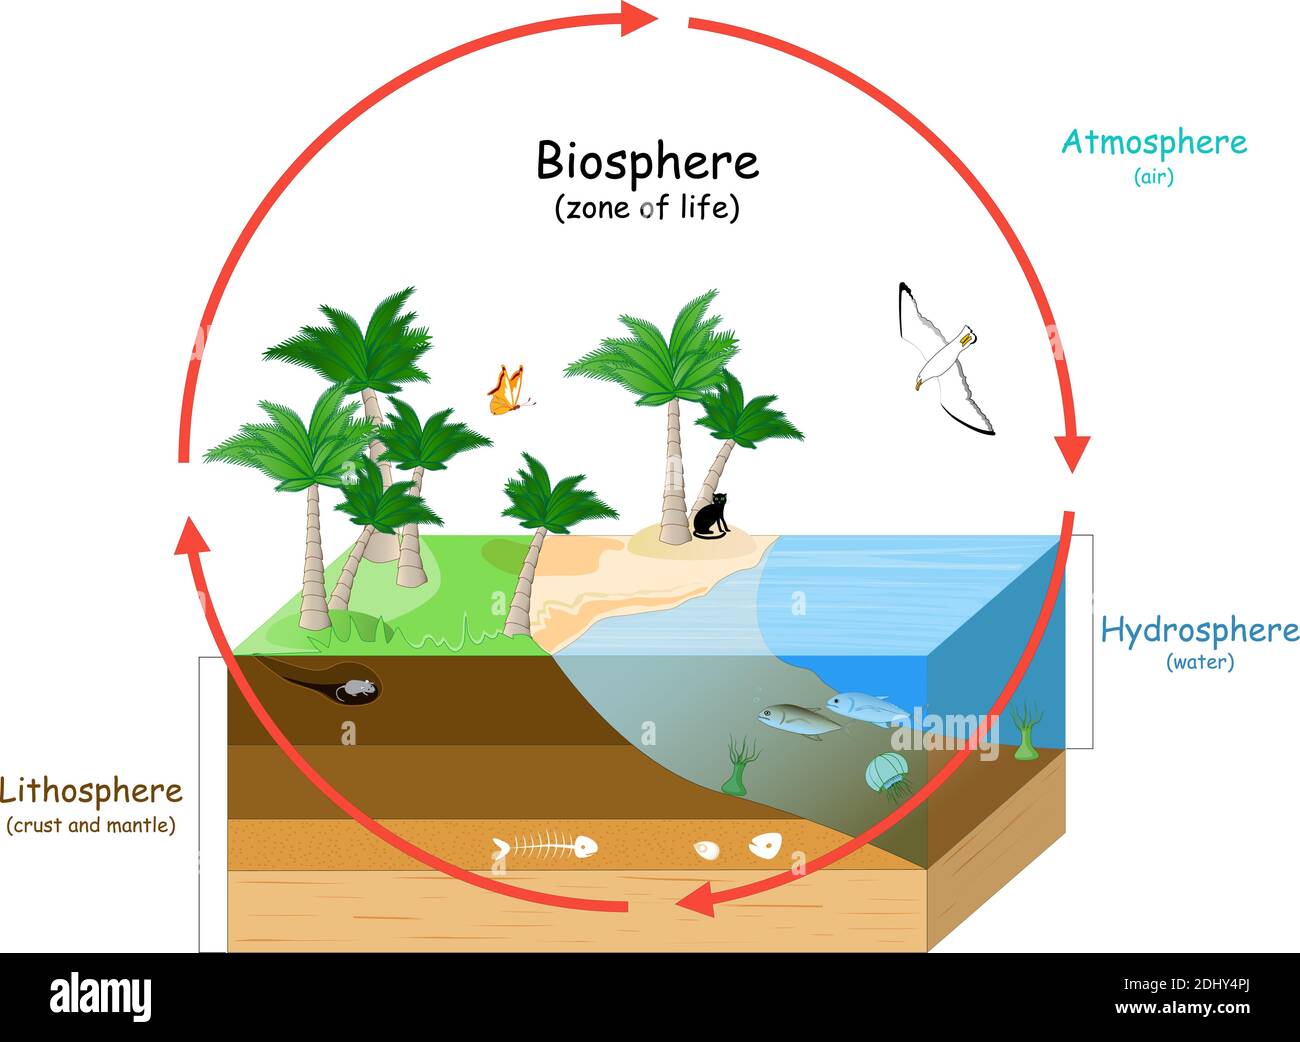 La Biosfera è una zona di vita sulla Terra. Ecosistemi naturali con fauna selvatica. Ecosfera (ambiente), idrosfera (acqua), atmosfera (aria), litosfera Illustrazione Vettoriale